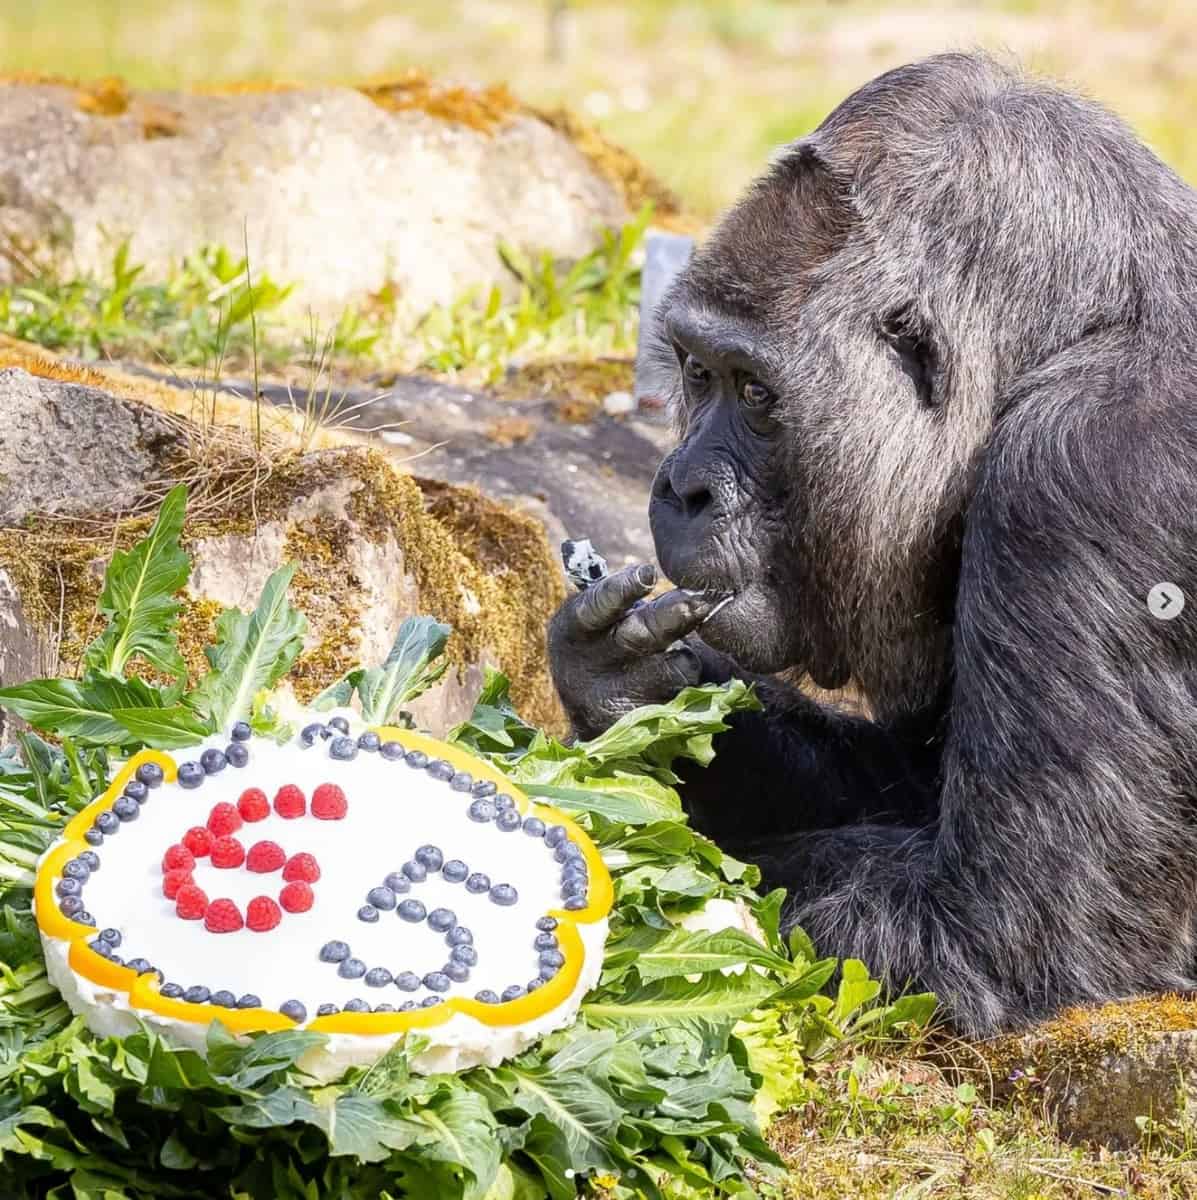 cea mai bătrână gorilă din lume a împlinit 65 de ani - se află la grădina zoologică din berlin